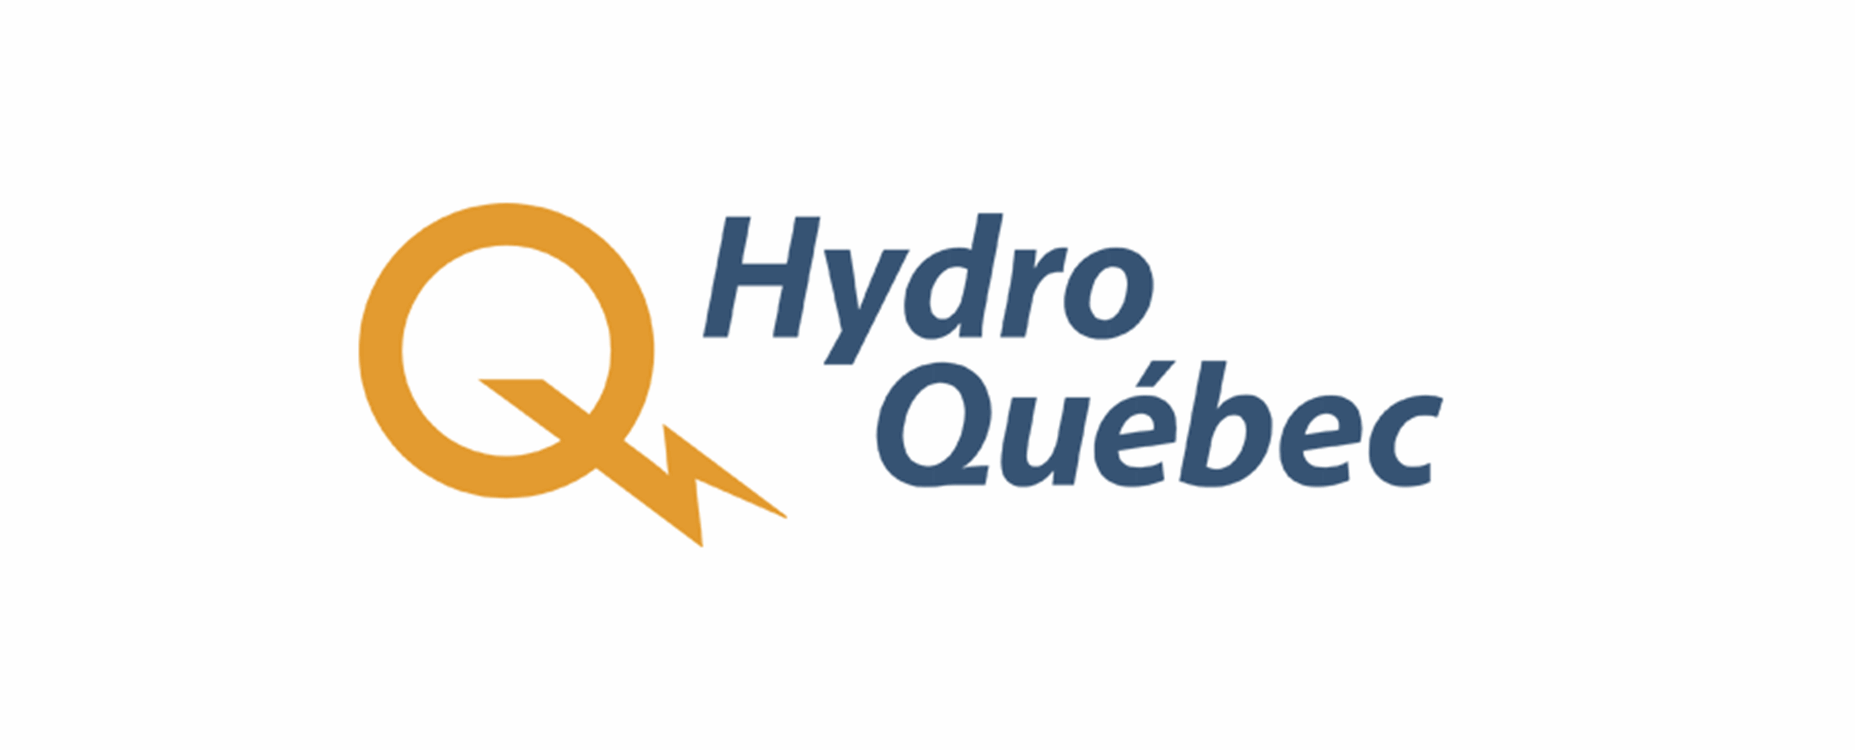 hydro-quebec-logo3